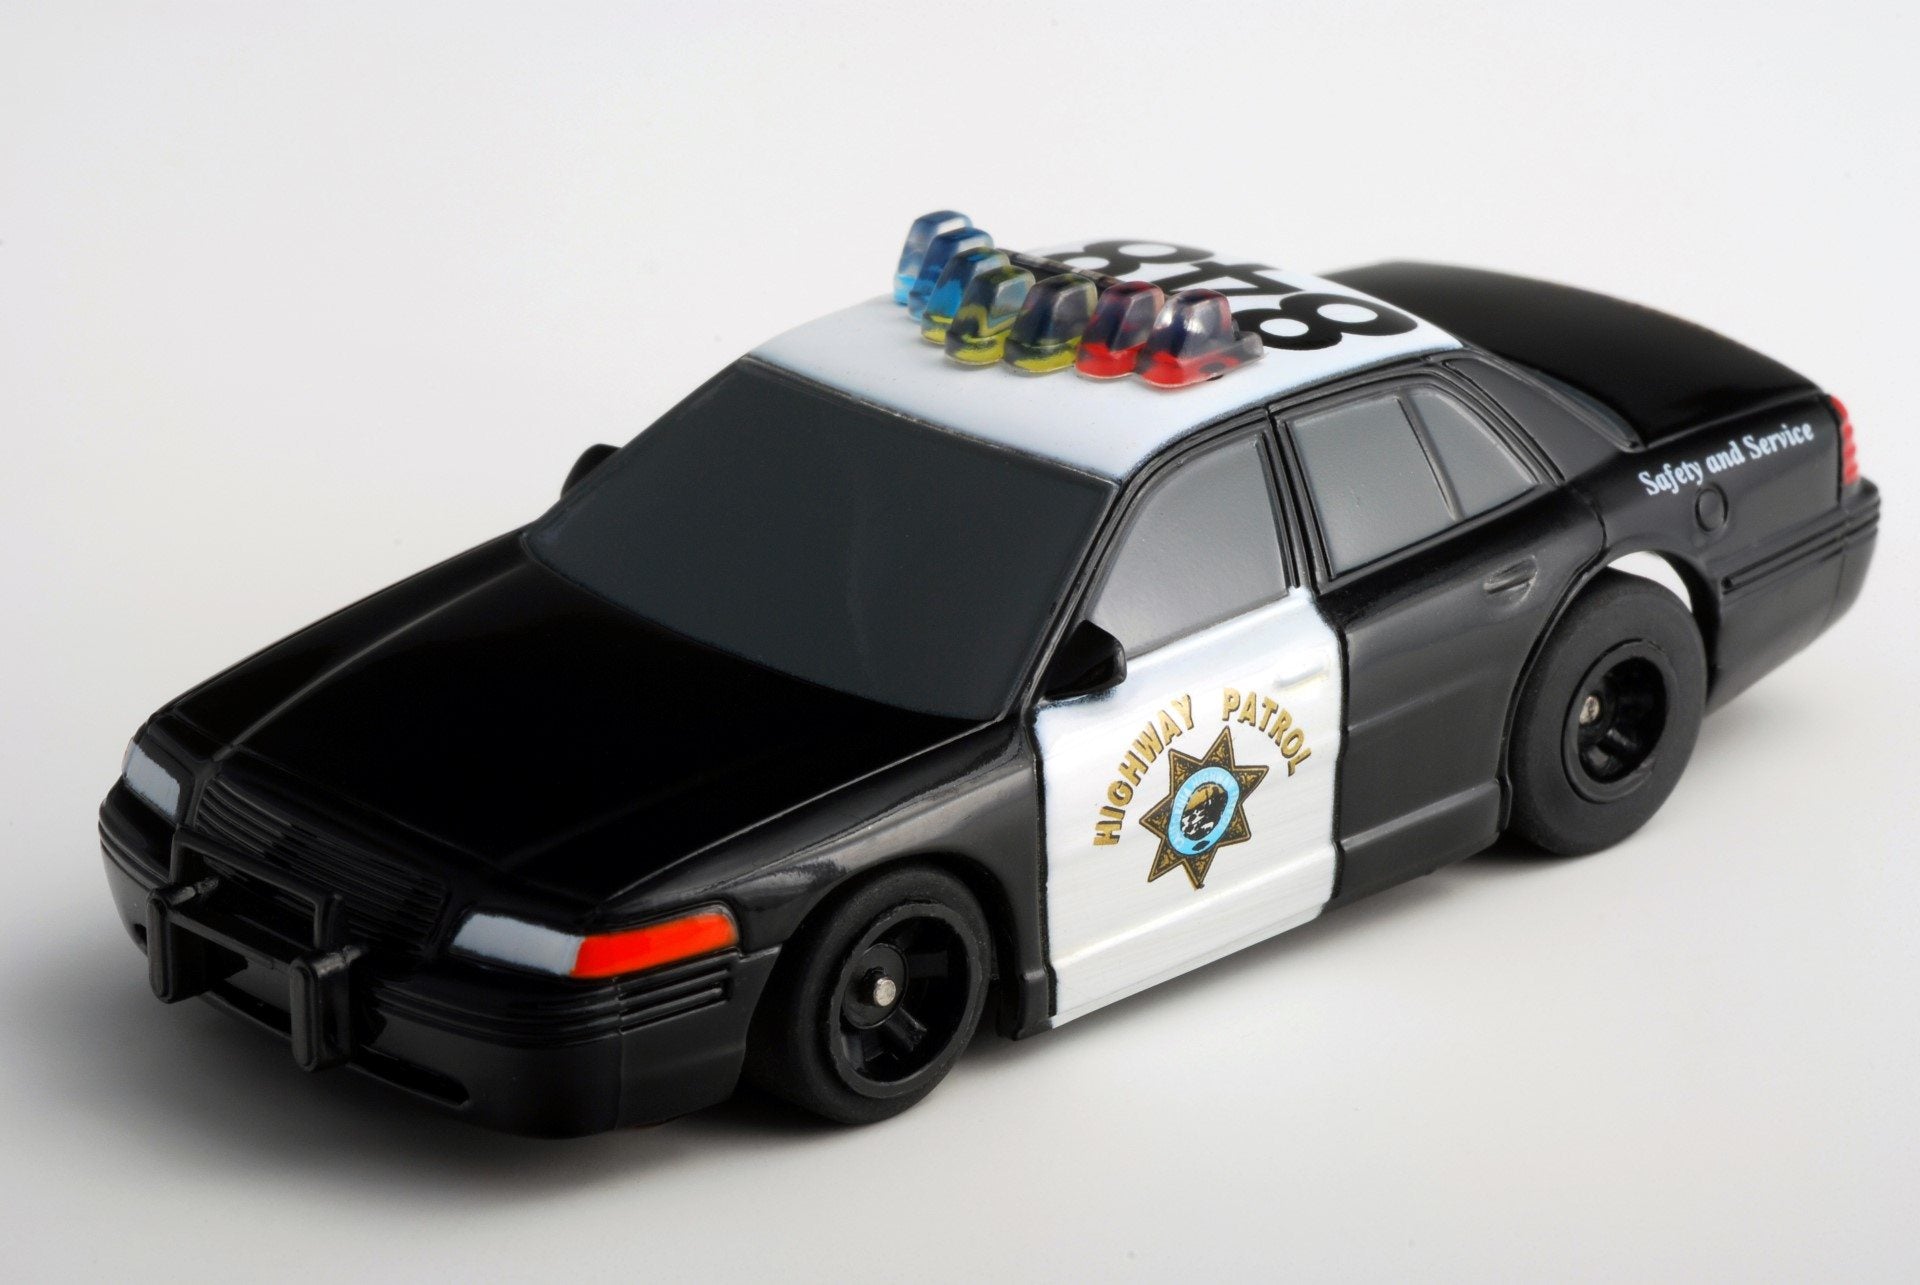 AFX 21034 Highway Patrol #848 Police MegeG+ Mega G+ Ho slot car